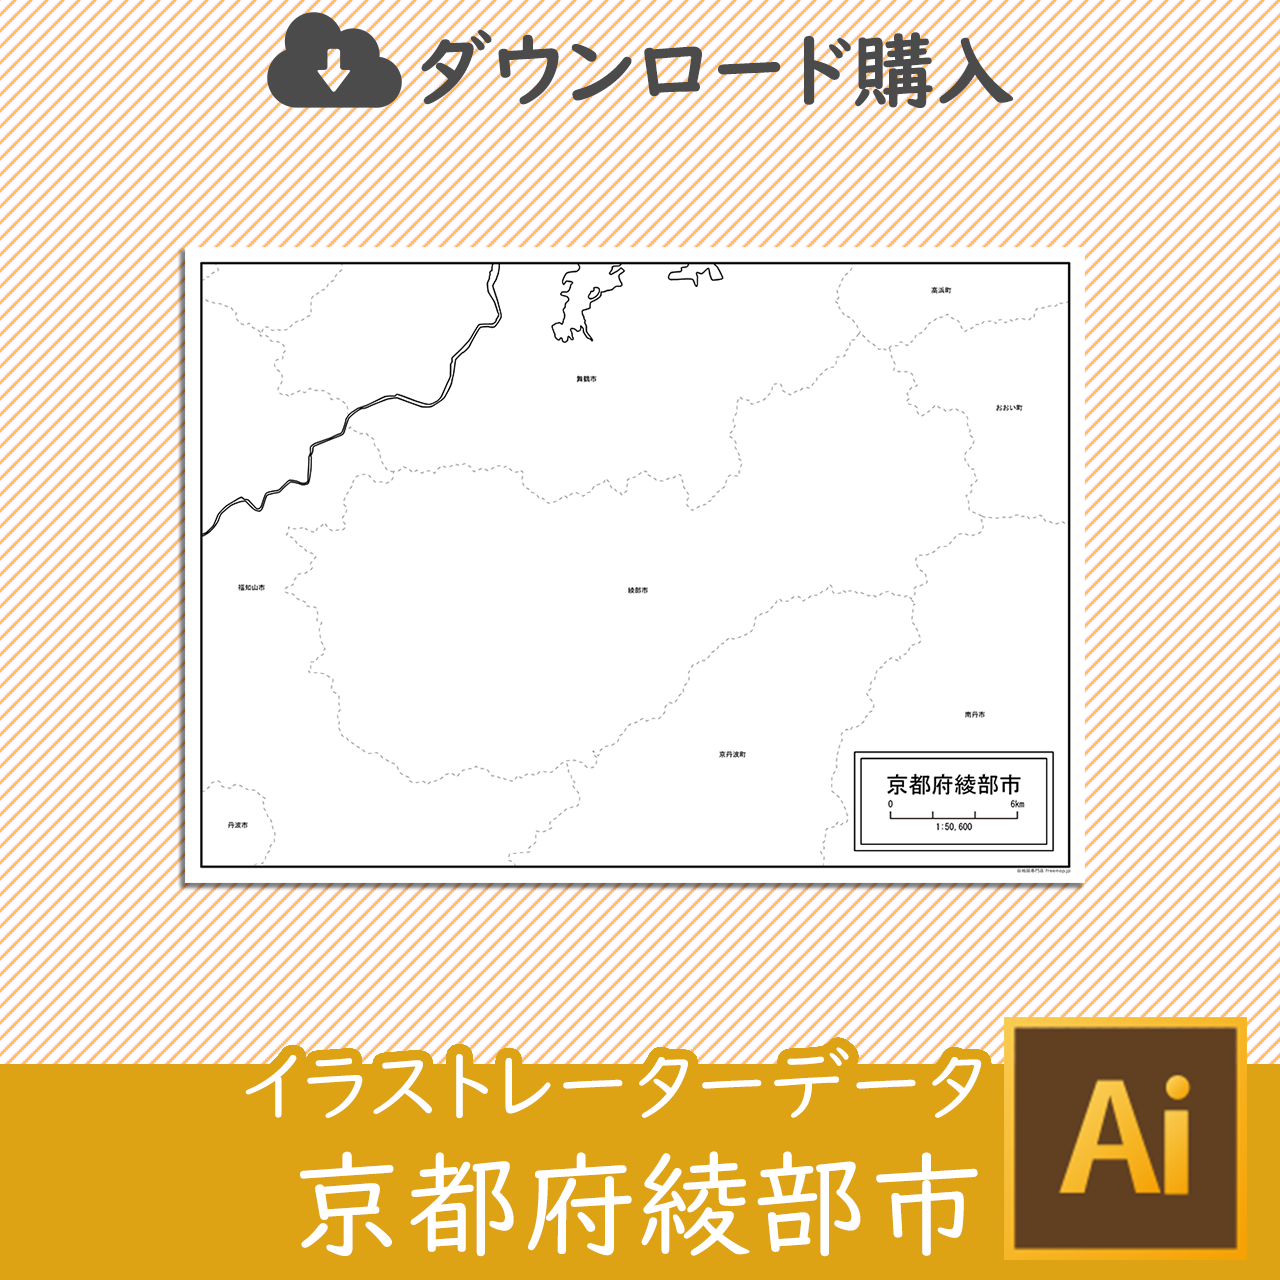 綾部市のaiデータのサムネイル画像